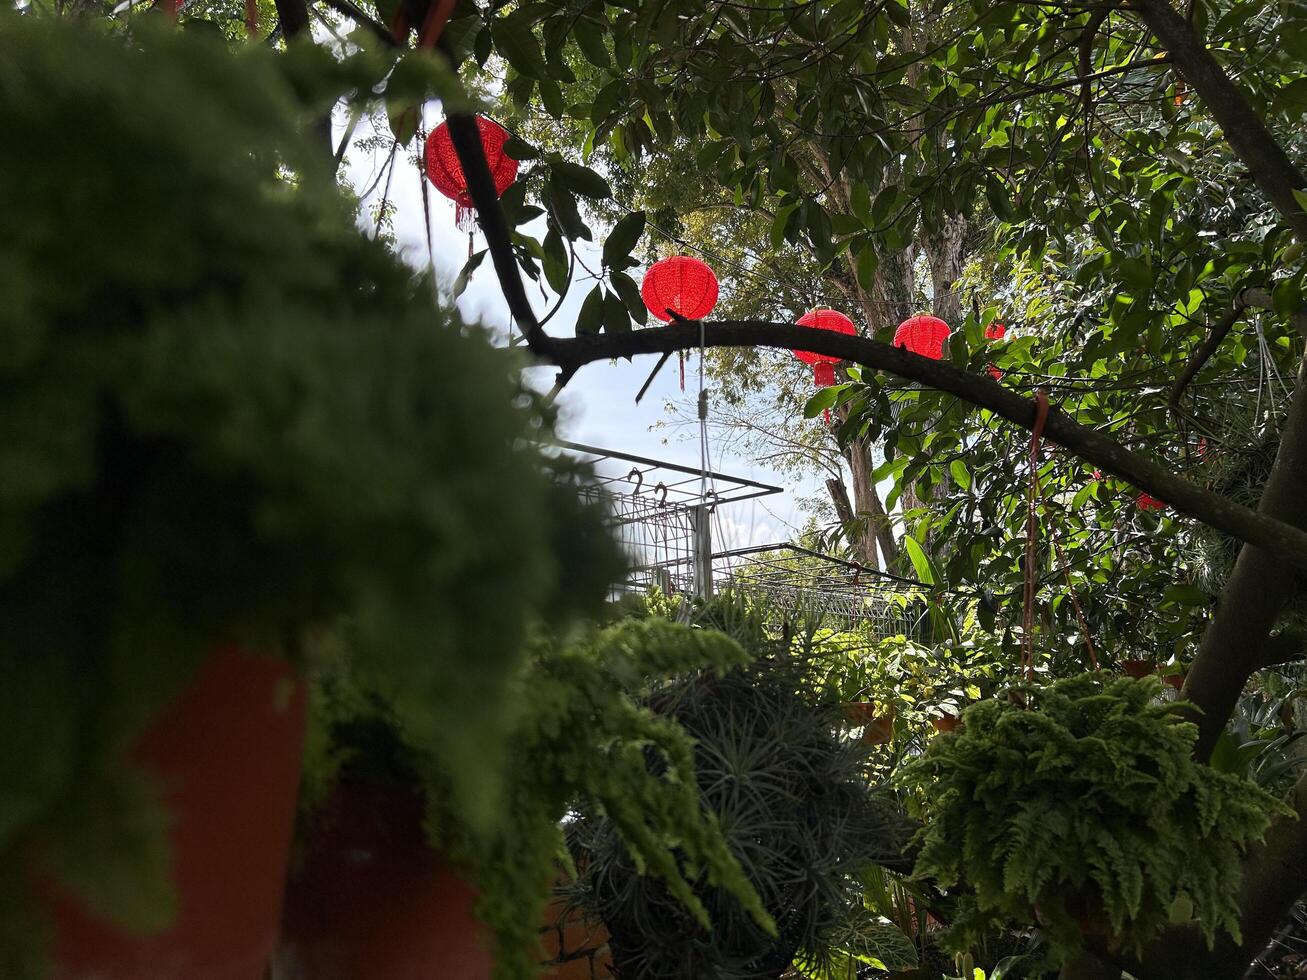 tranquille jardin vue avec pendaison vibrant rouge lanternes sur une ensoleillé journée photo